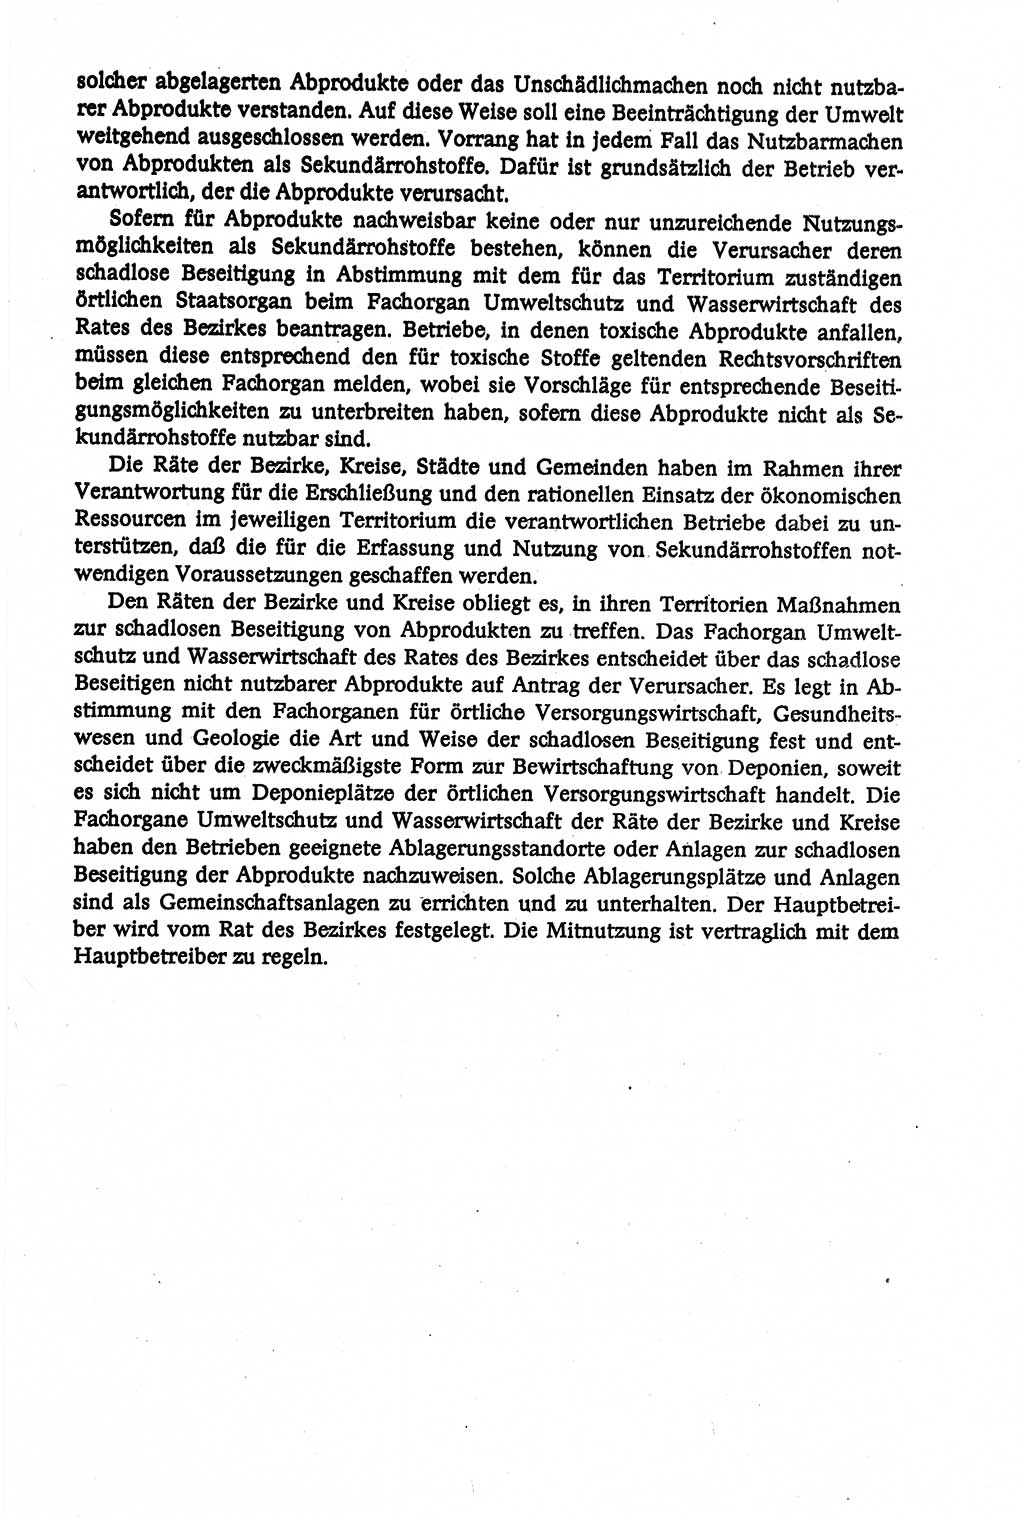 Verwaltungsrecht [Deutsche Demokratische Republik (DDR)], Lehrbuch 1979, Seite 575 (Verw.-R. DDR Lb. 1979, S. 575)